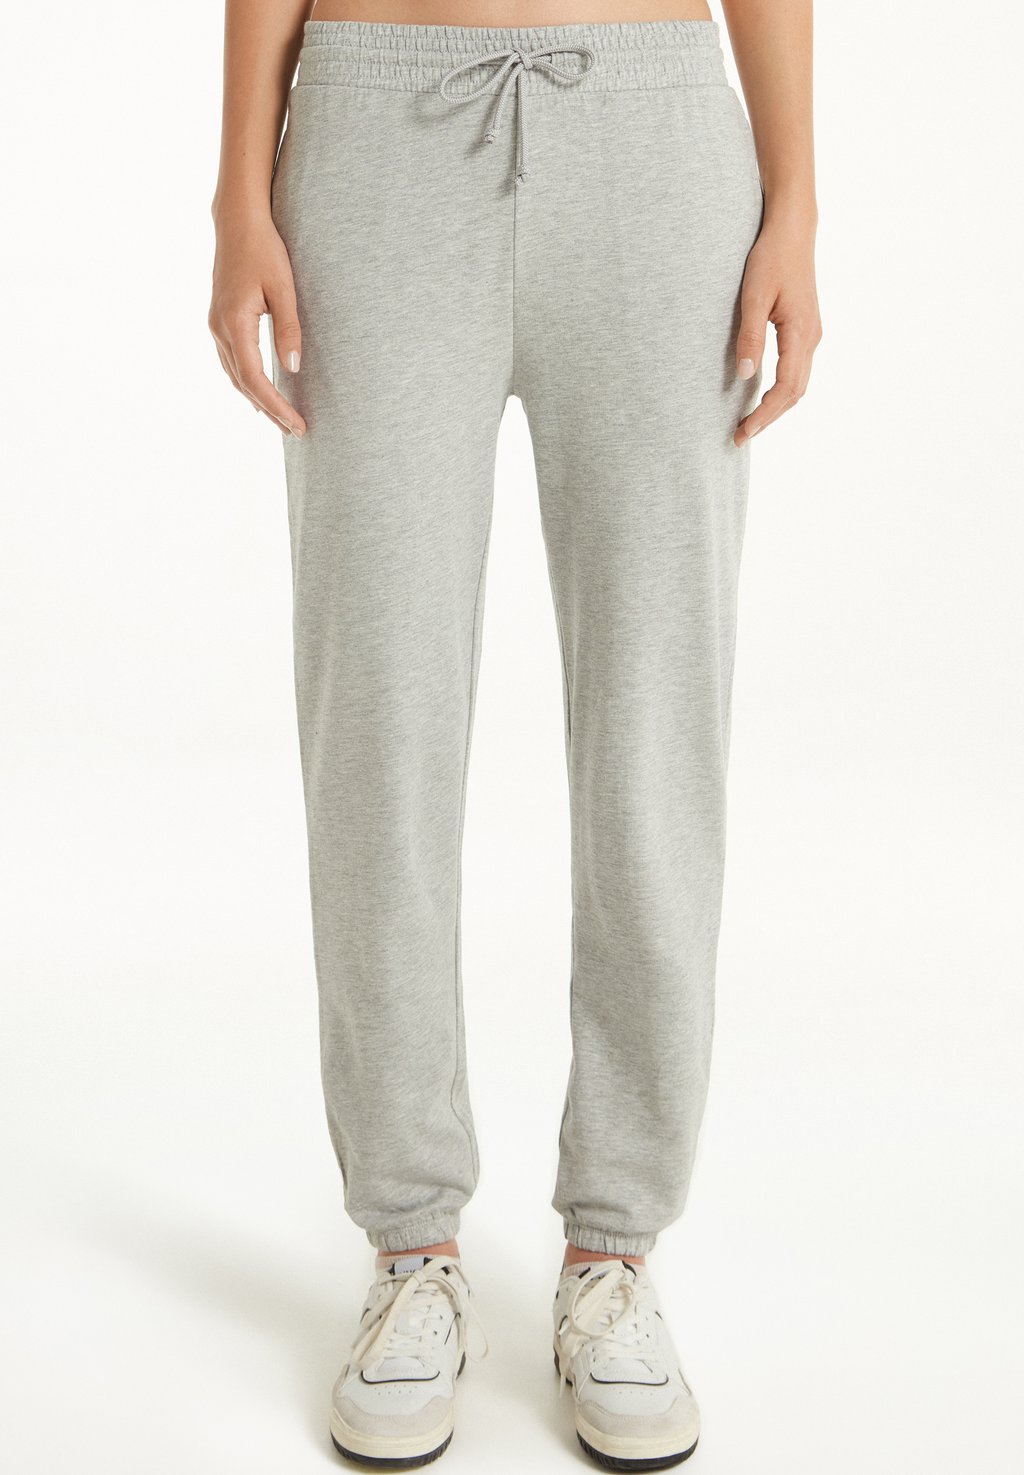 Спортивные брюки Tezenis, цвет grigio melange chiar спортивные брюки comfort campagnolo цвет grigio